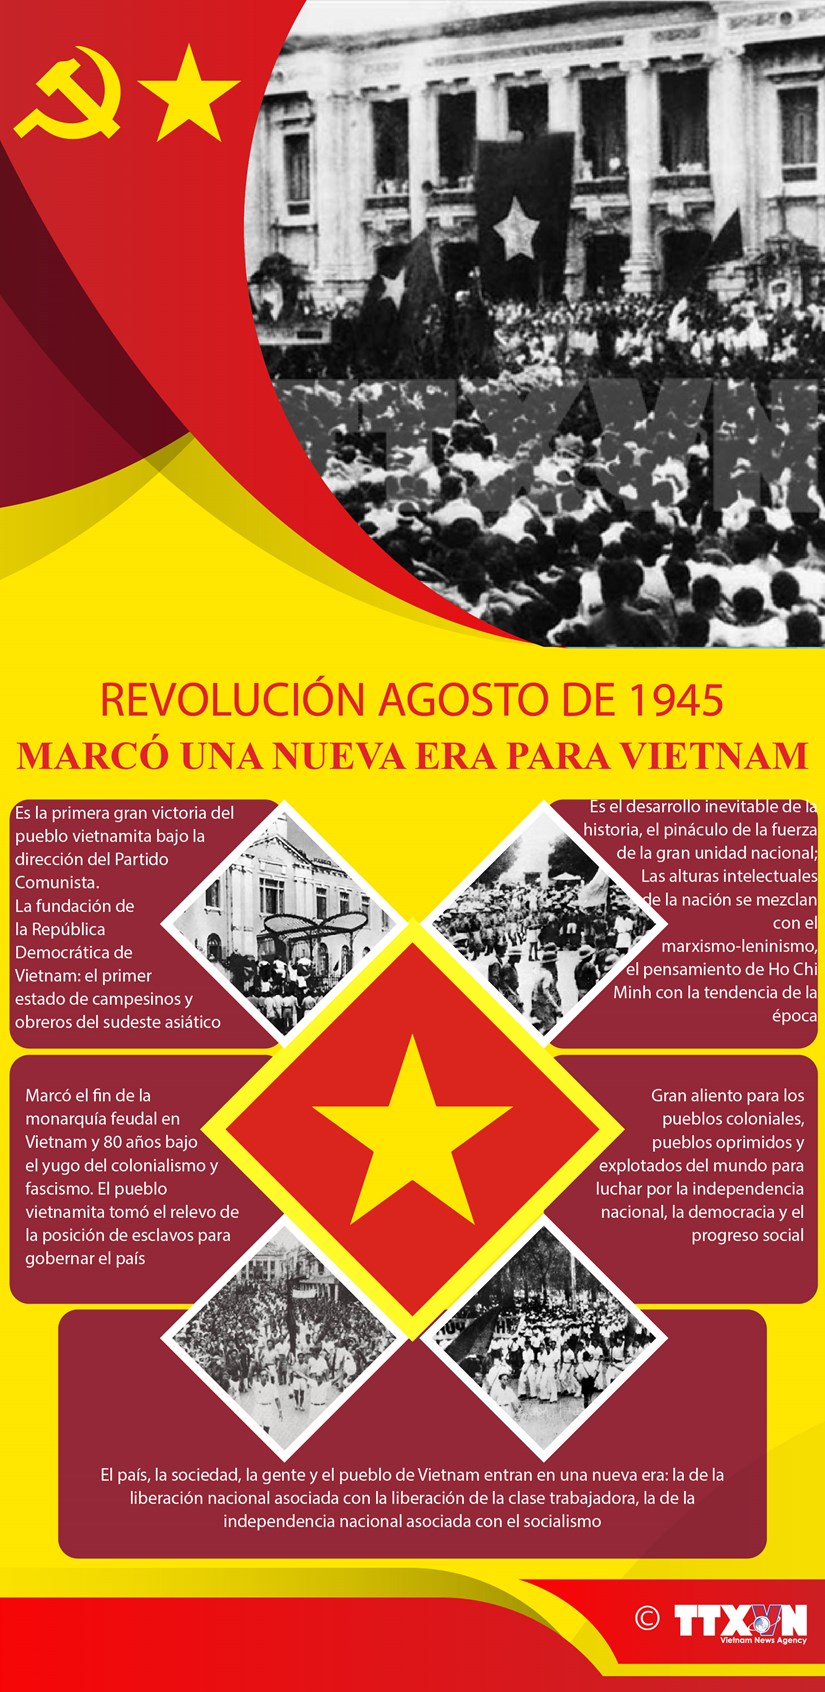 [Info] REVOLUCION AGOSTO DE 1945, MARCO UNA NUEVA ERA PARA VIETNAM hinh anh 1